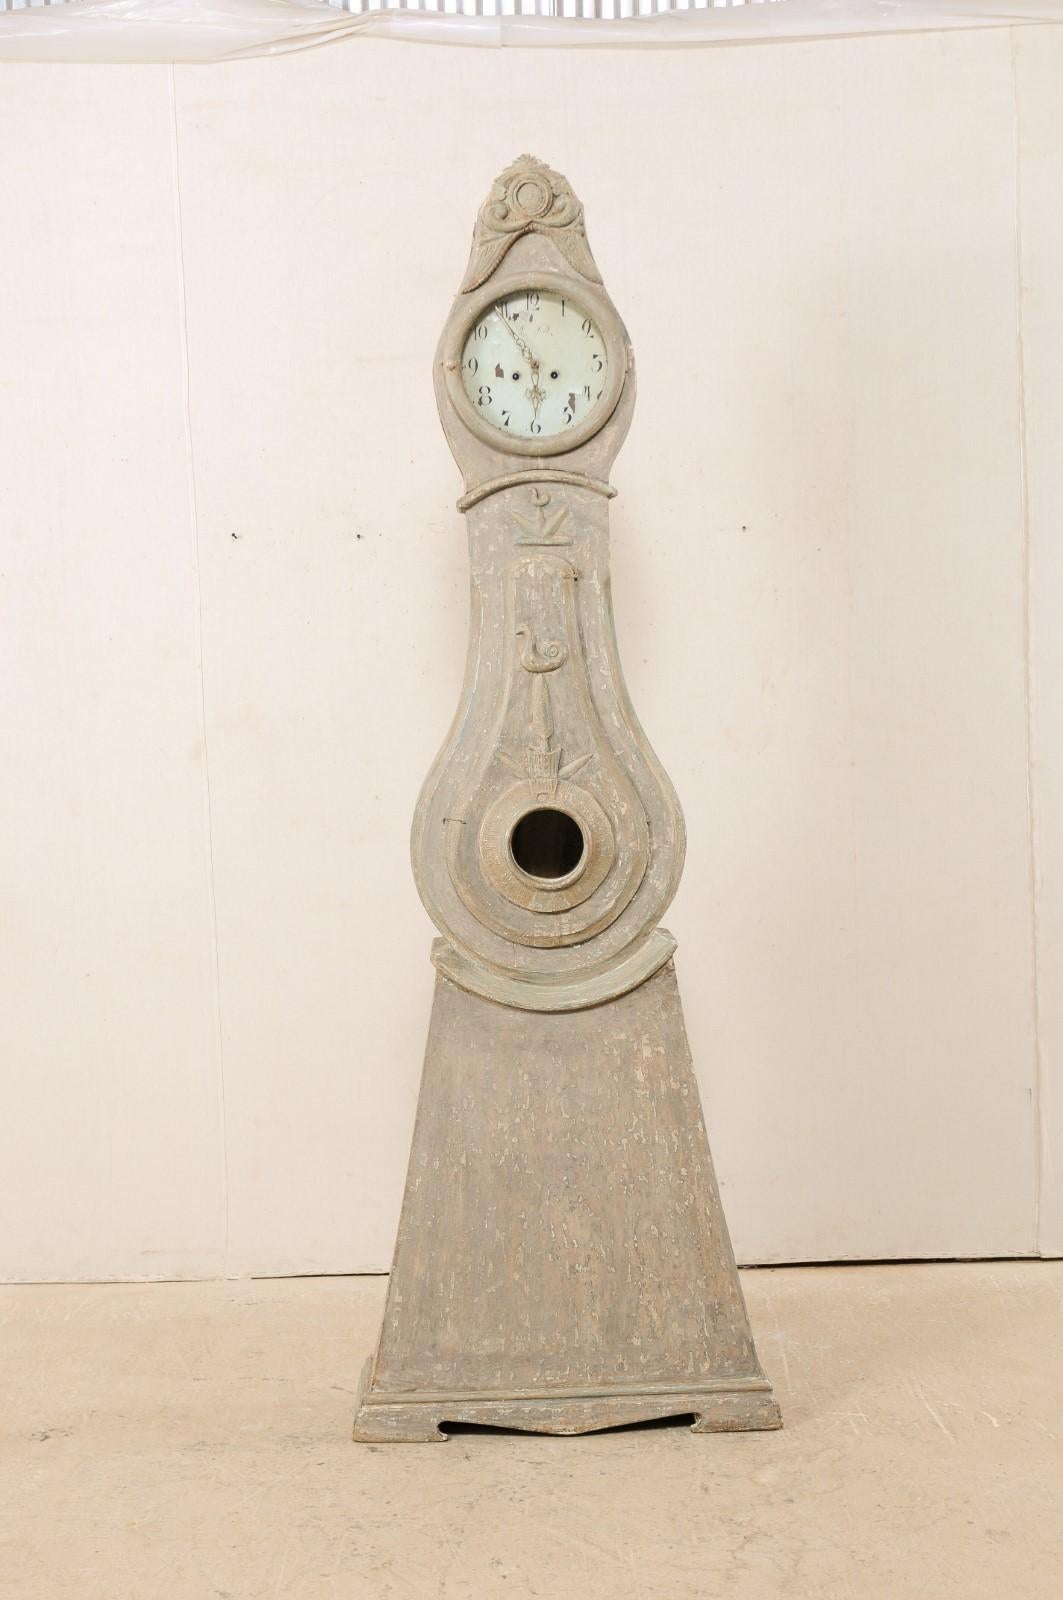 Une horloge grand-père en bois peint du nord de la Suède du début du 19ème siècle avec de belles garnitures. Cette horloge de sol antique du comté de Norrbotten, en Suède (région du Nord), présente une crête joliment sculptée, exagérée et surélevée,